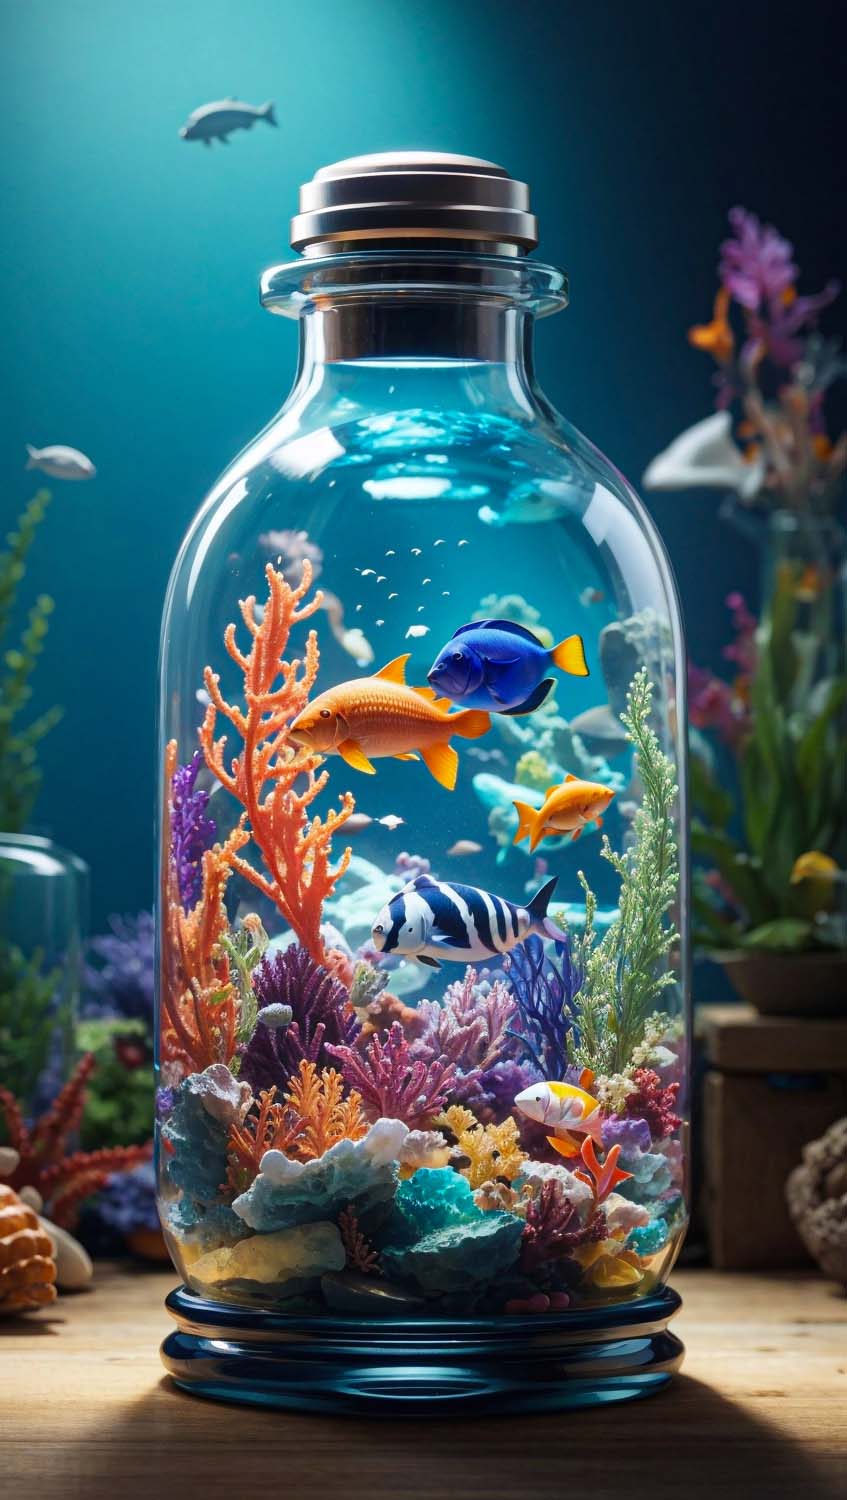 Aquarium Bottle iPhone Wallpaper